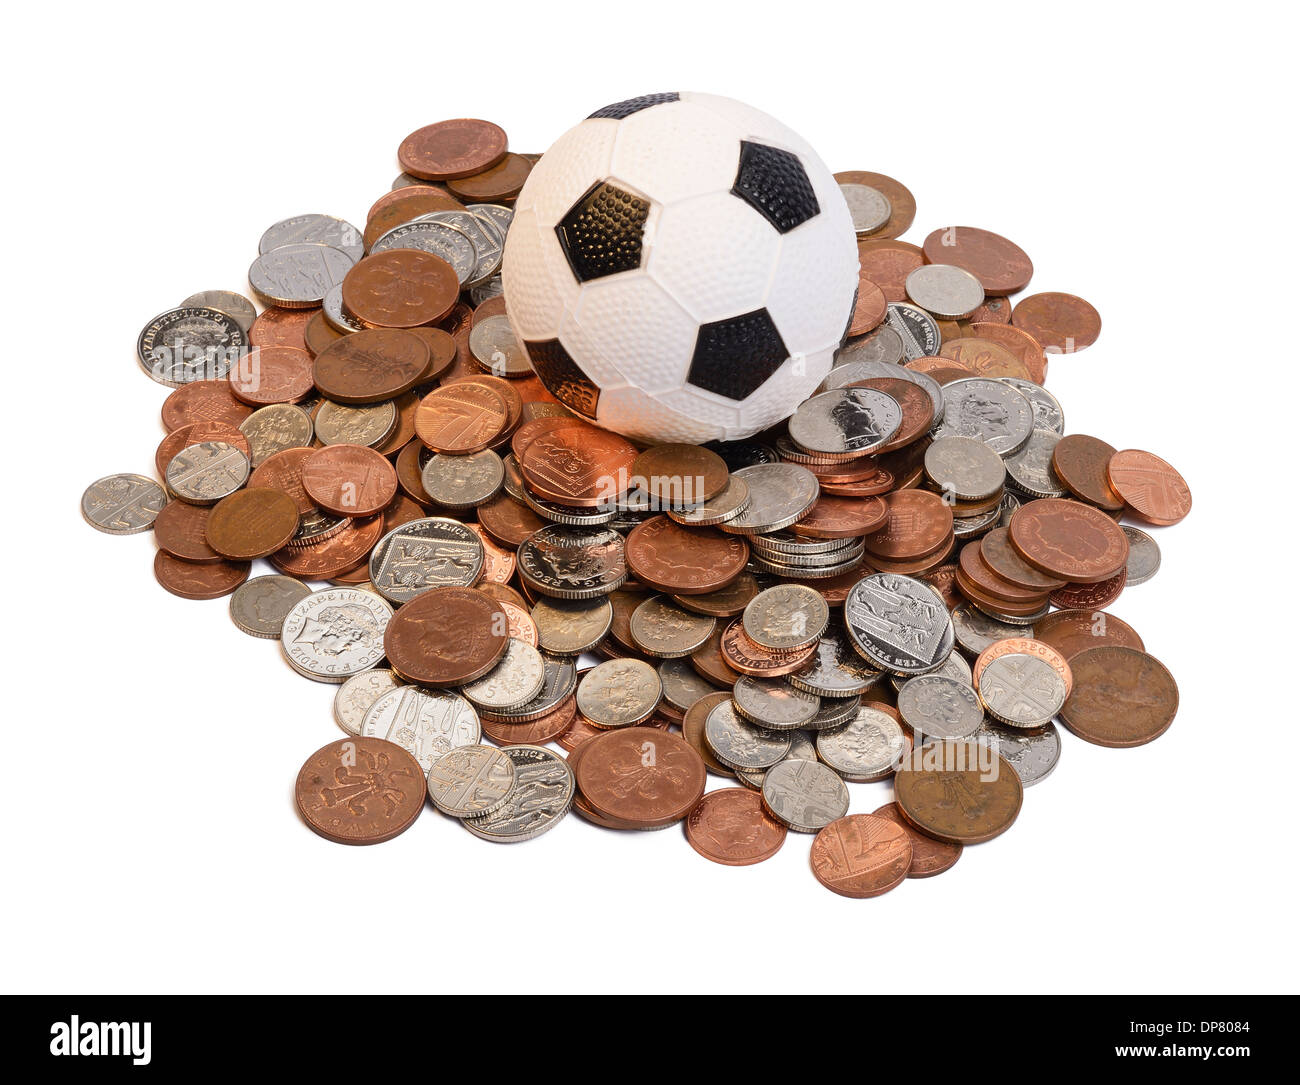 Le football au milieu d'un tas de pièces de monnaie Banque D'Images